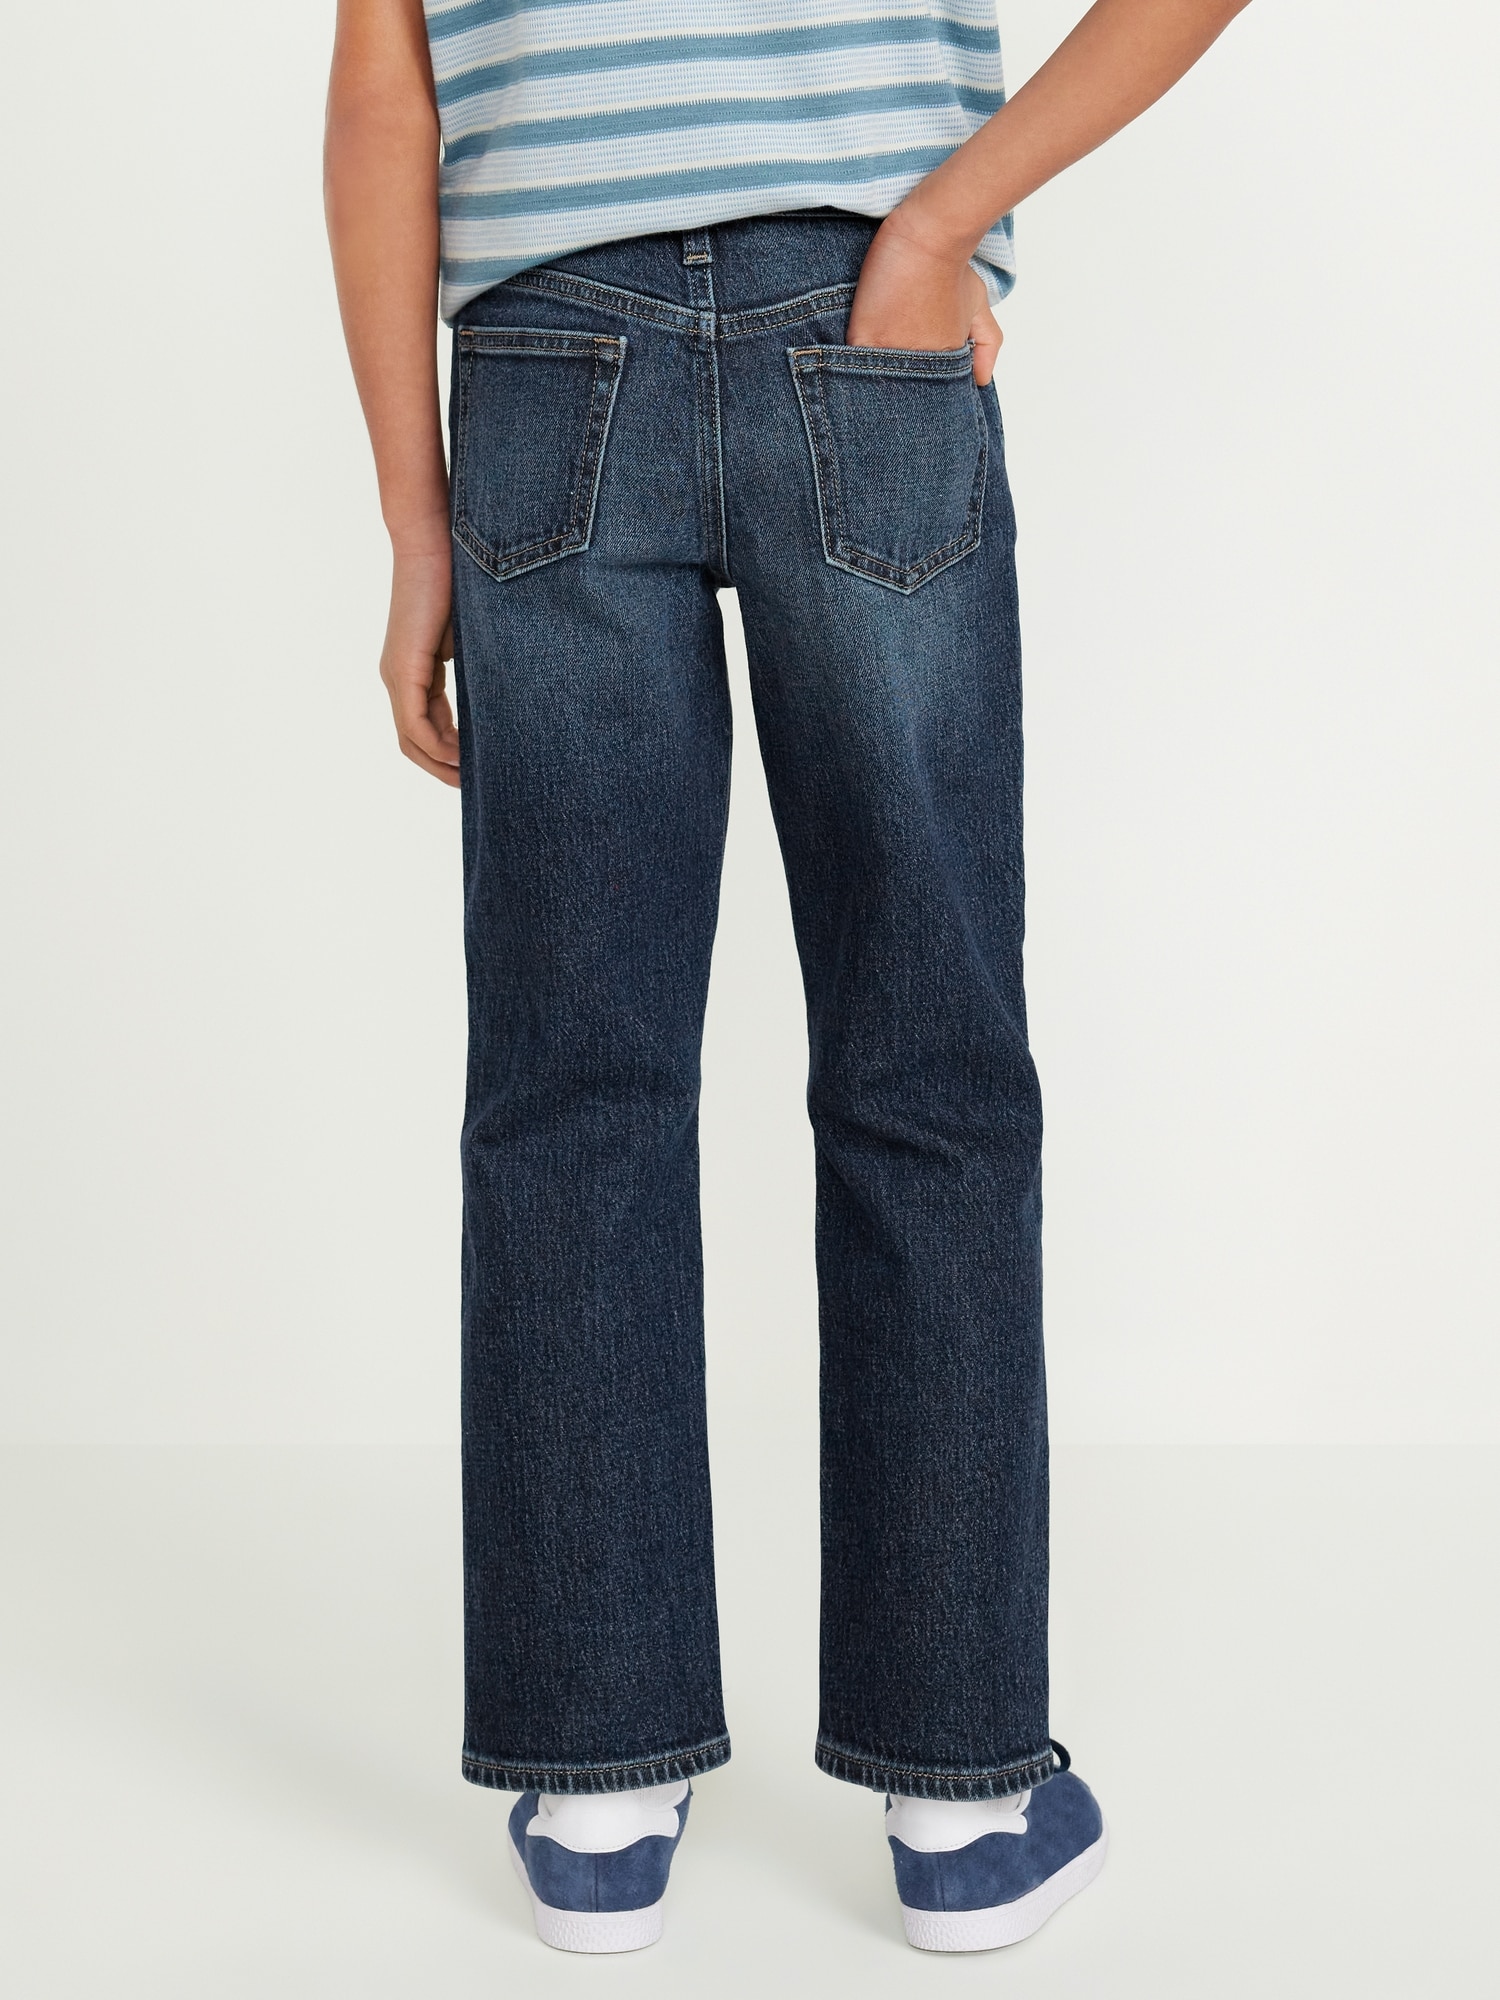 올드네이비 Built-In Flex Loose Straight Jeans for Boys